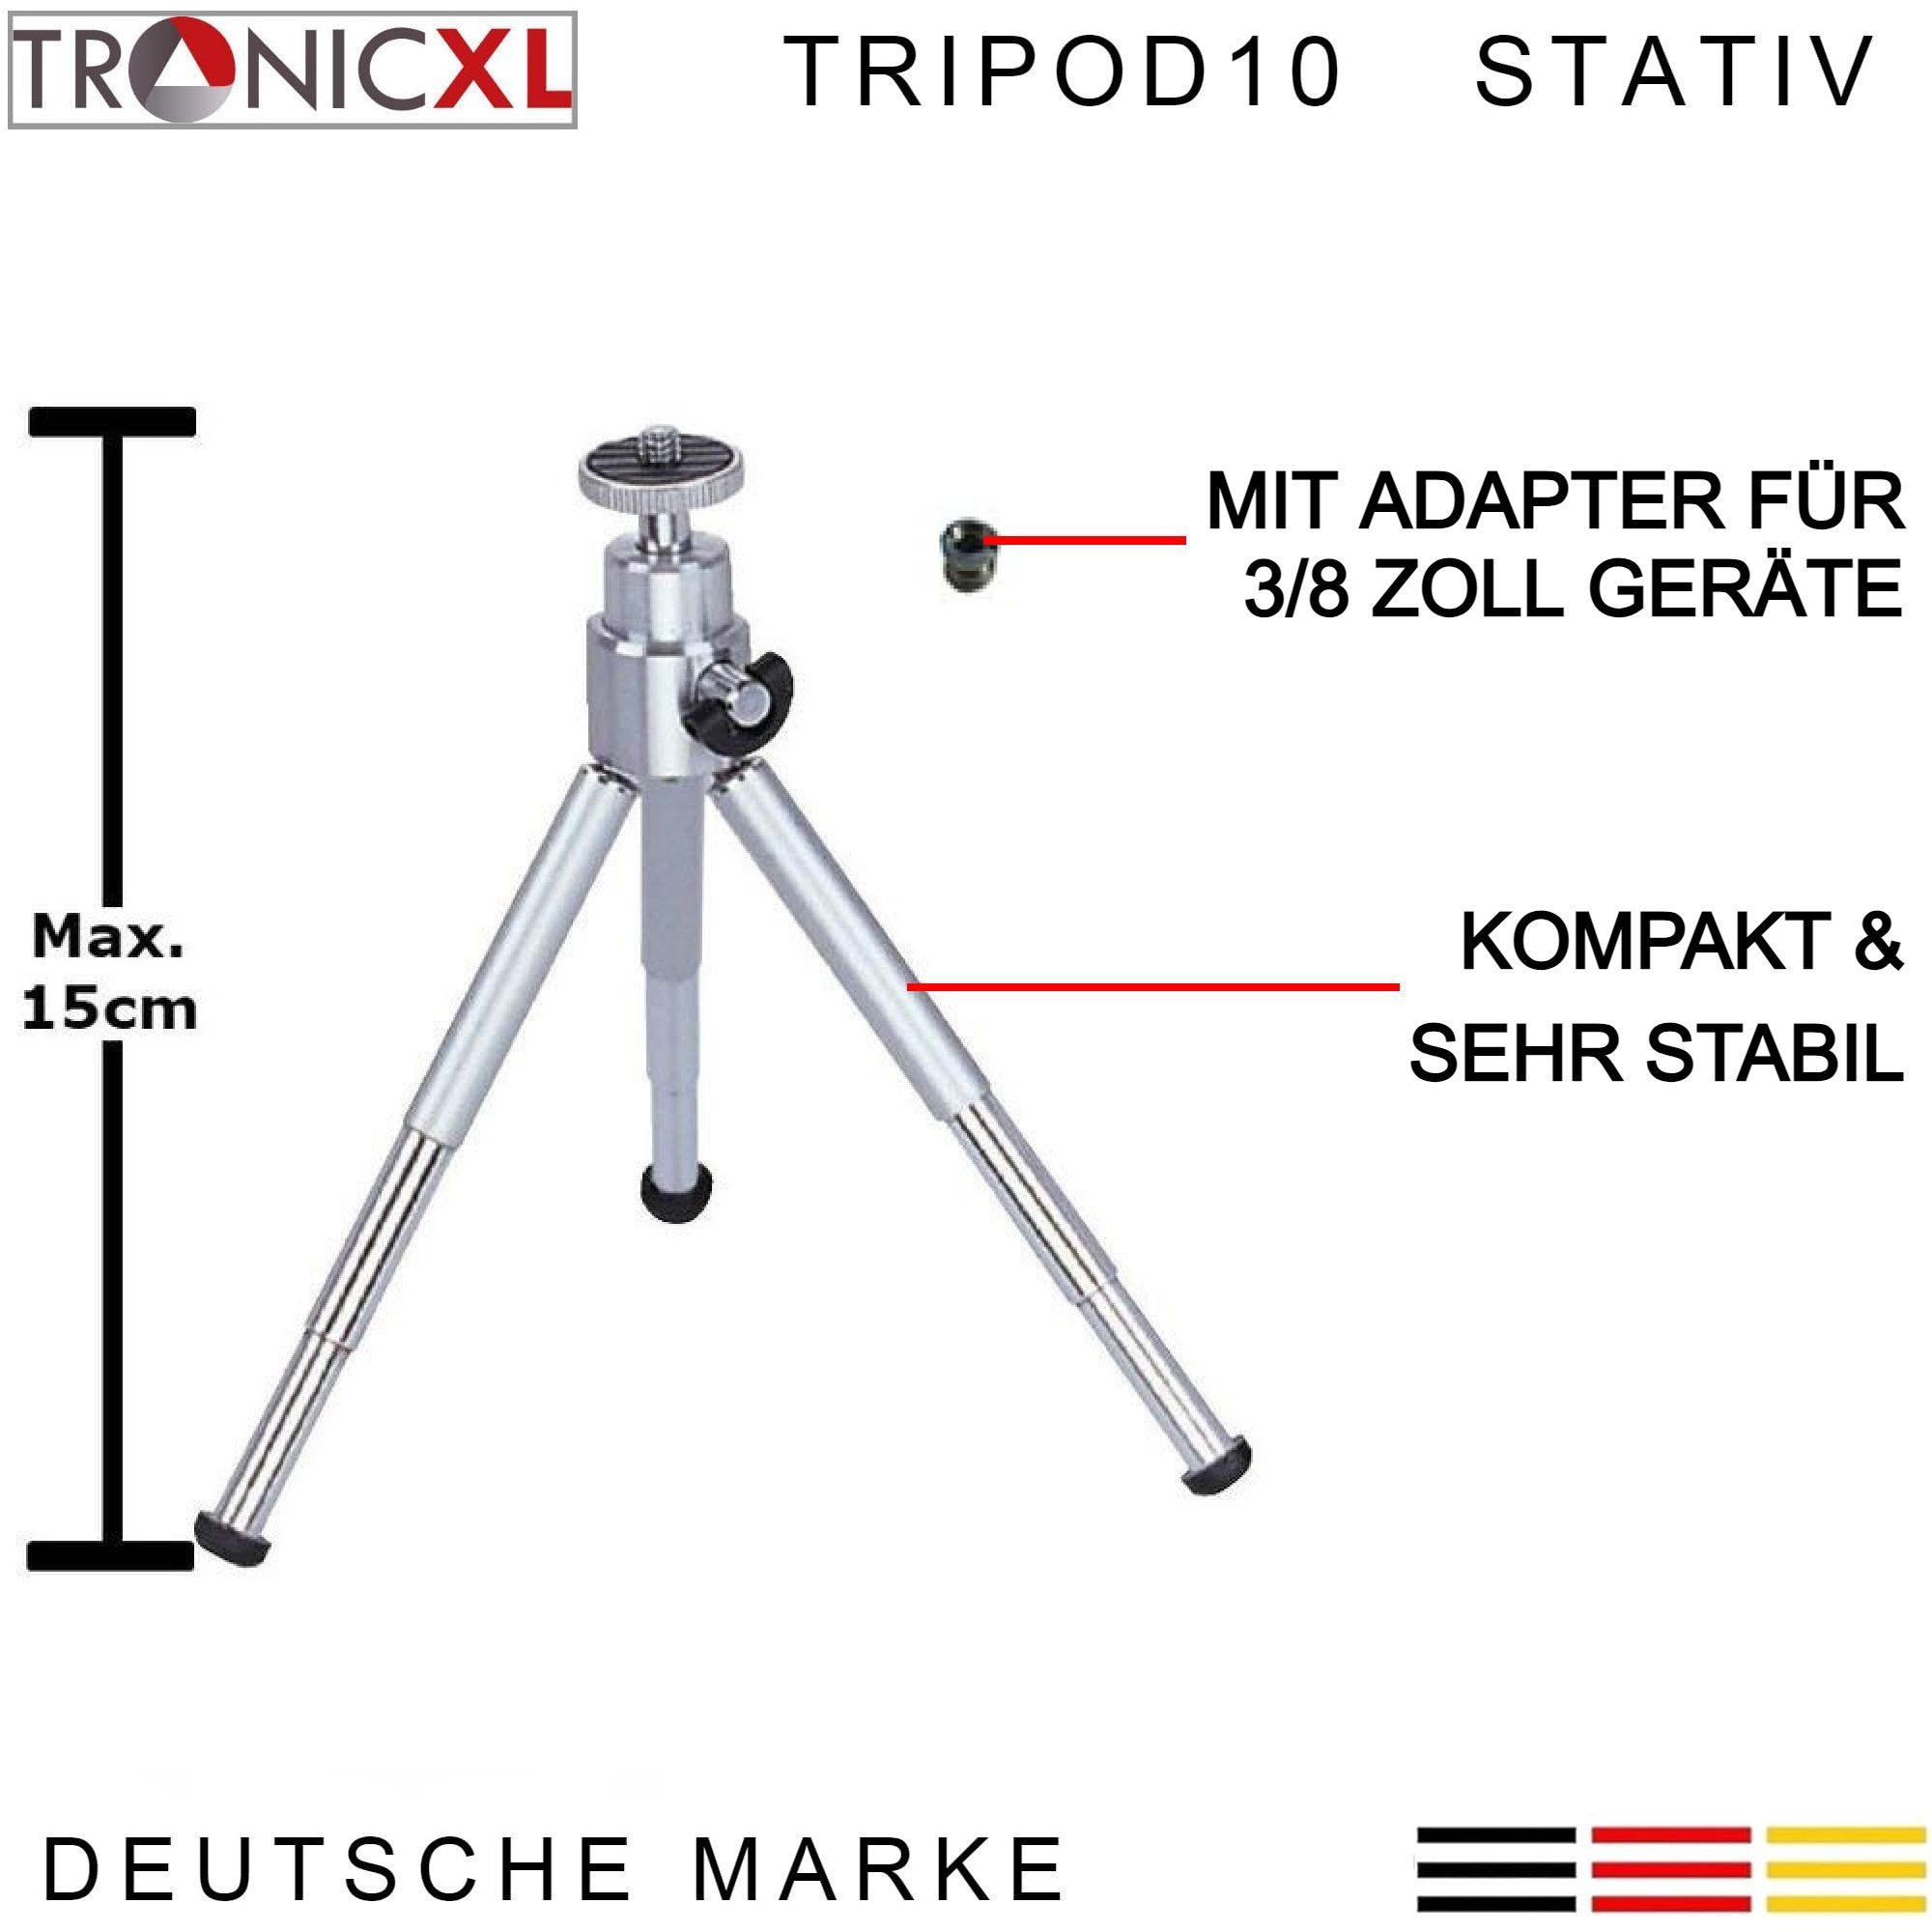 Laser Tacklife Einhell Baustativ Mini Dewalt Stativhalterung für Tripod Bosch Stativ TronicXL